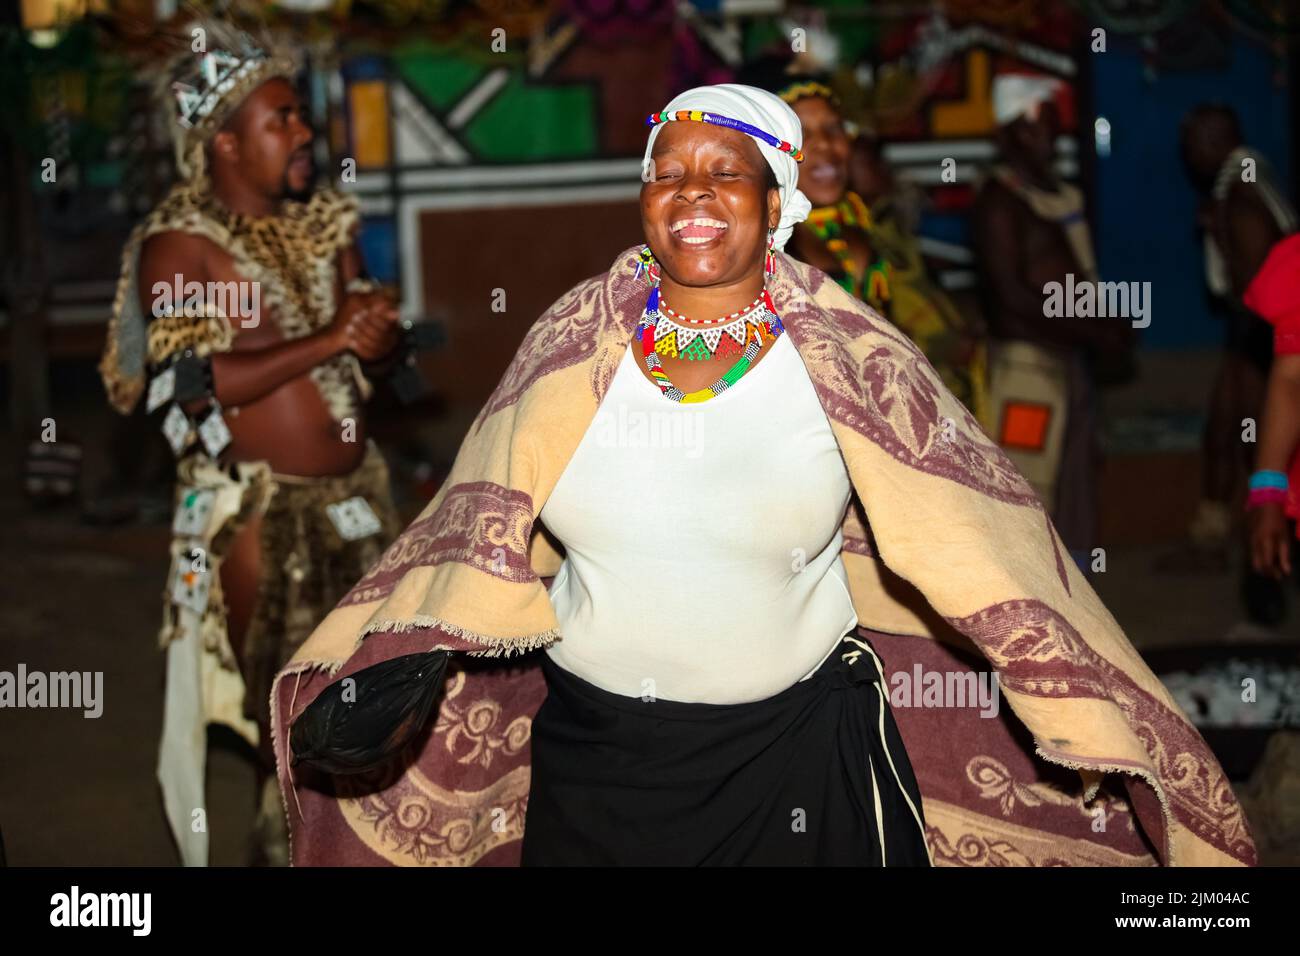 Eine afrikanische Frau, die einen Tanz in traditionellem Gewand aufführt Stockfoto